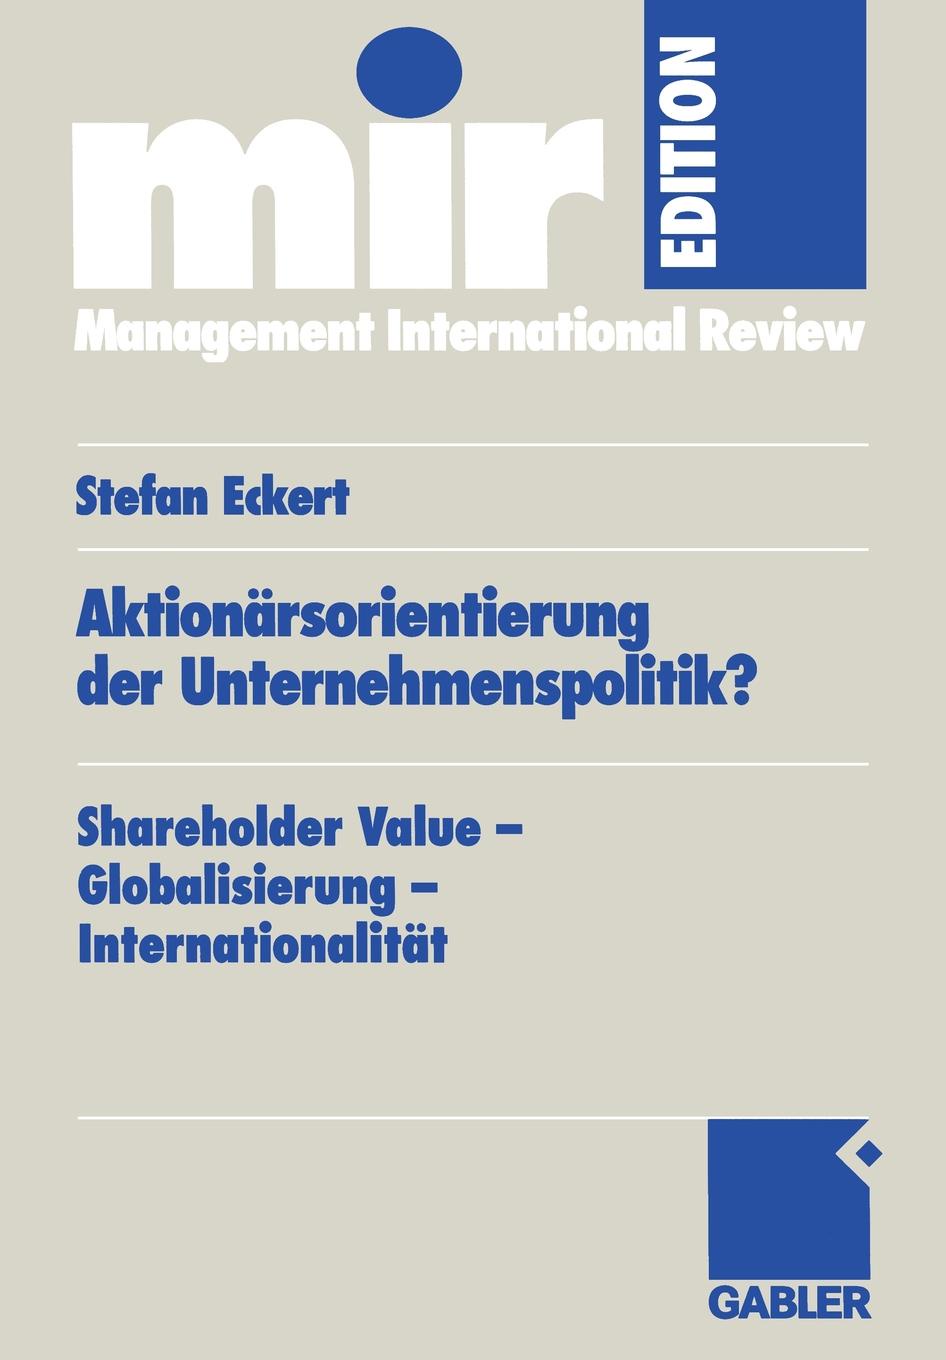 Aktionarsorientierung der Unternehmenspolitik.. Shareholder Value - Globalisierung - Internationalitat